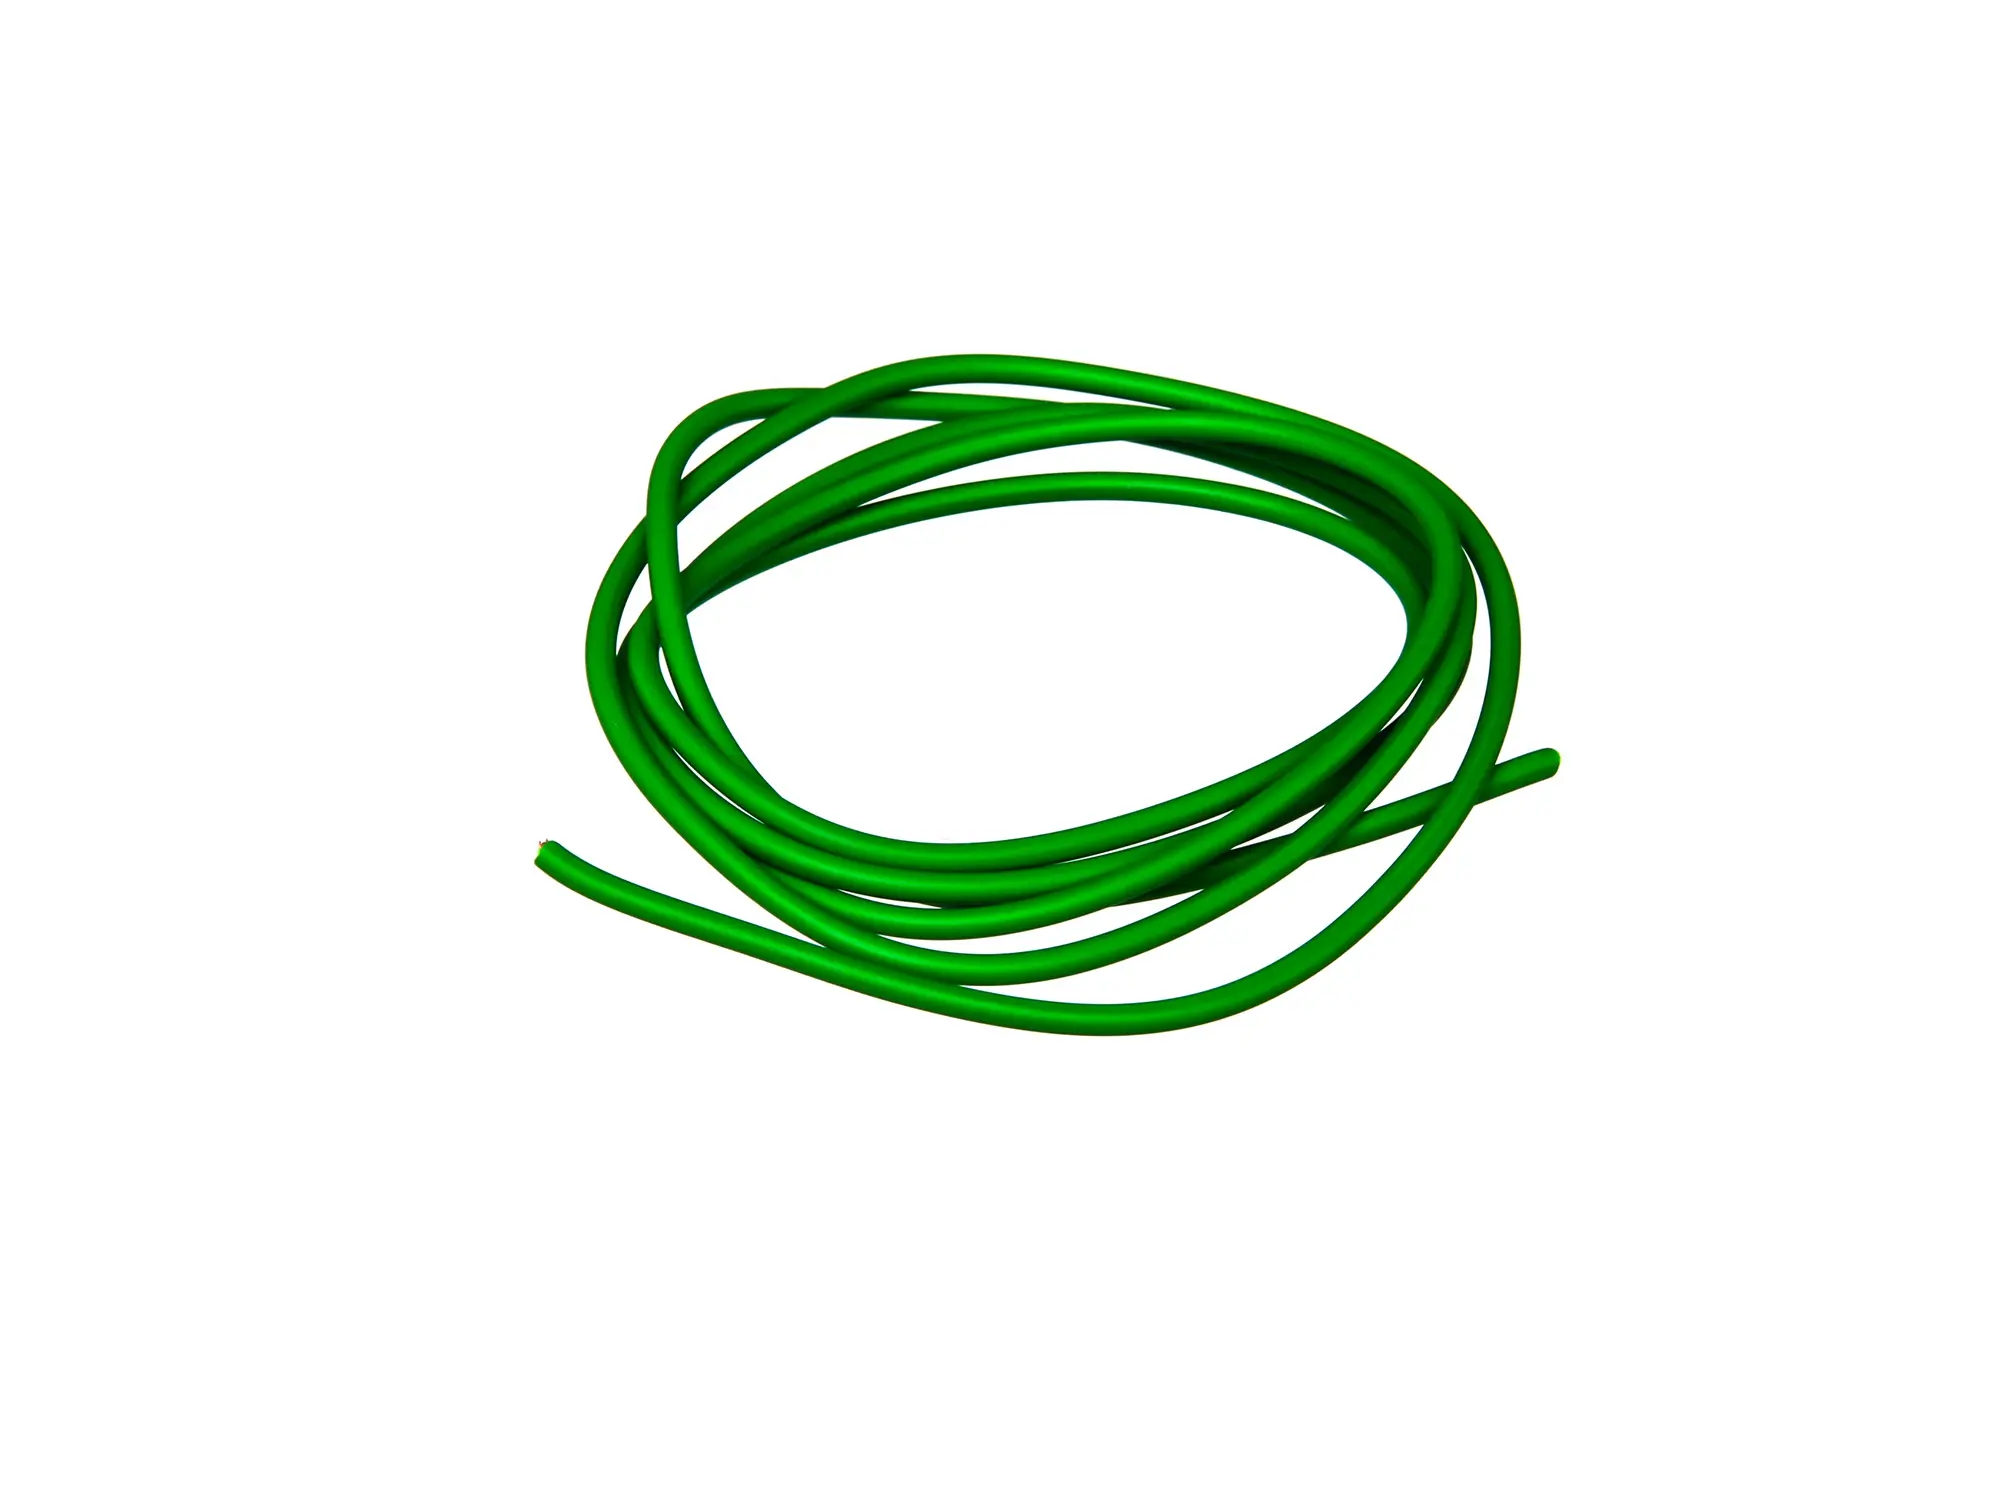 Kabel - Grün 0,50mm² Fahrzeugleitung - 1m, Art.-Nr.: 10001785 - Bild 1